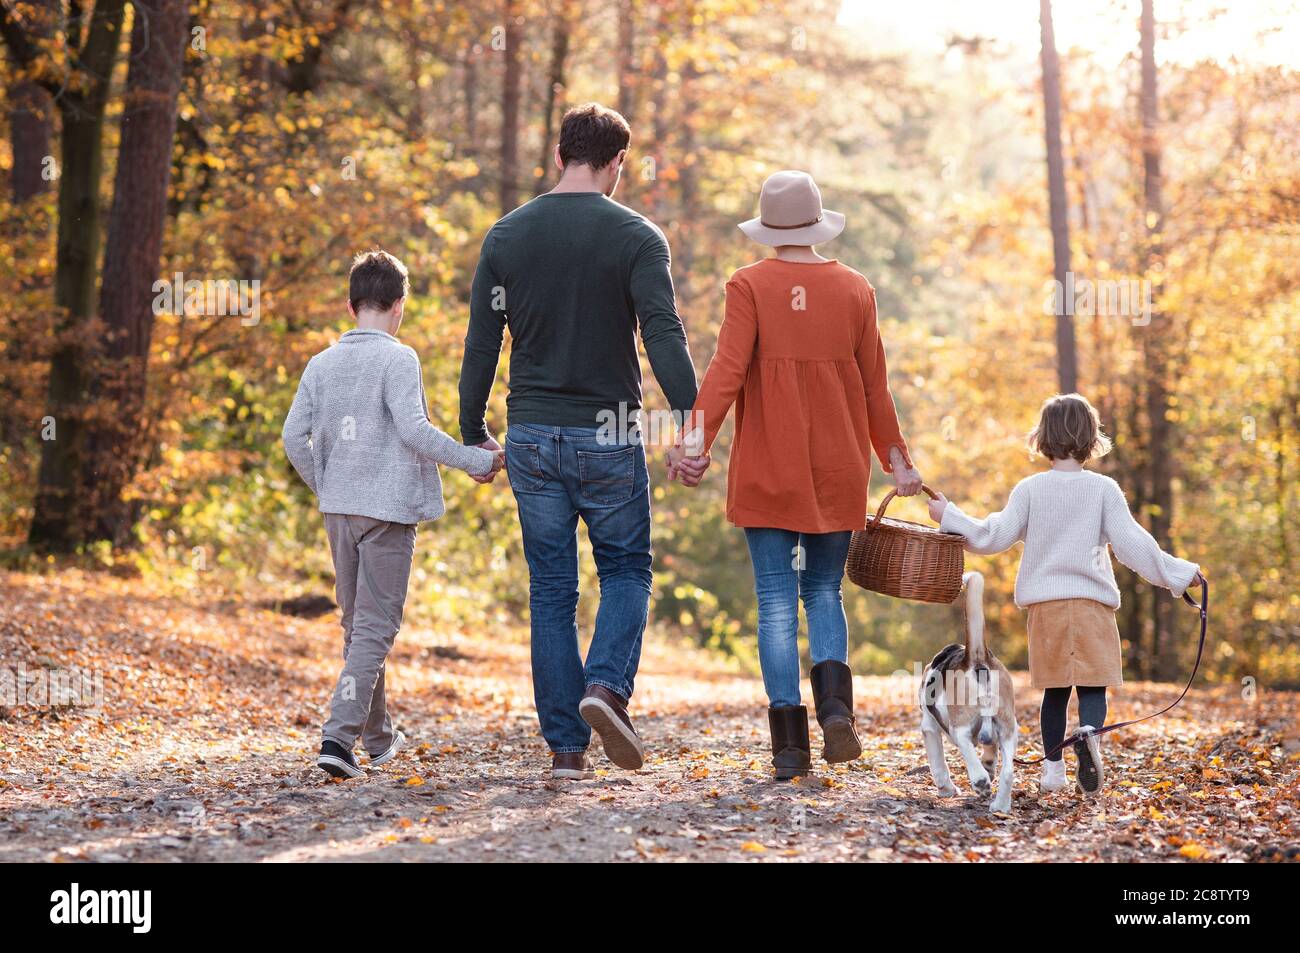 Rückansicht der jungen Familie mit kleinen Kindern und Hund auf einem Spaziergang im Herbstwald. Stockfoto